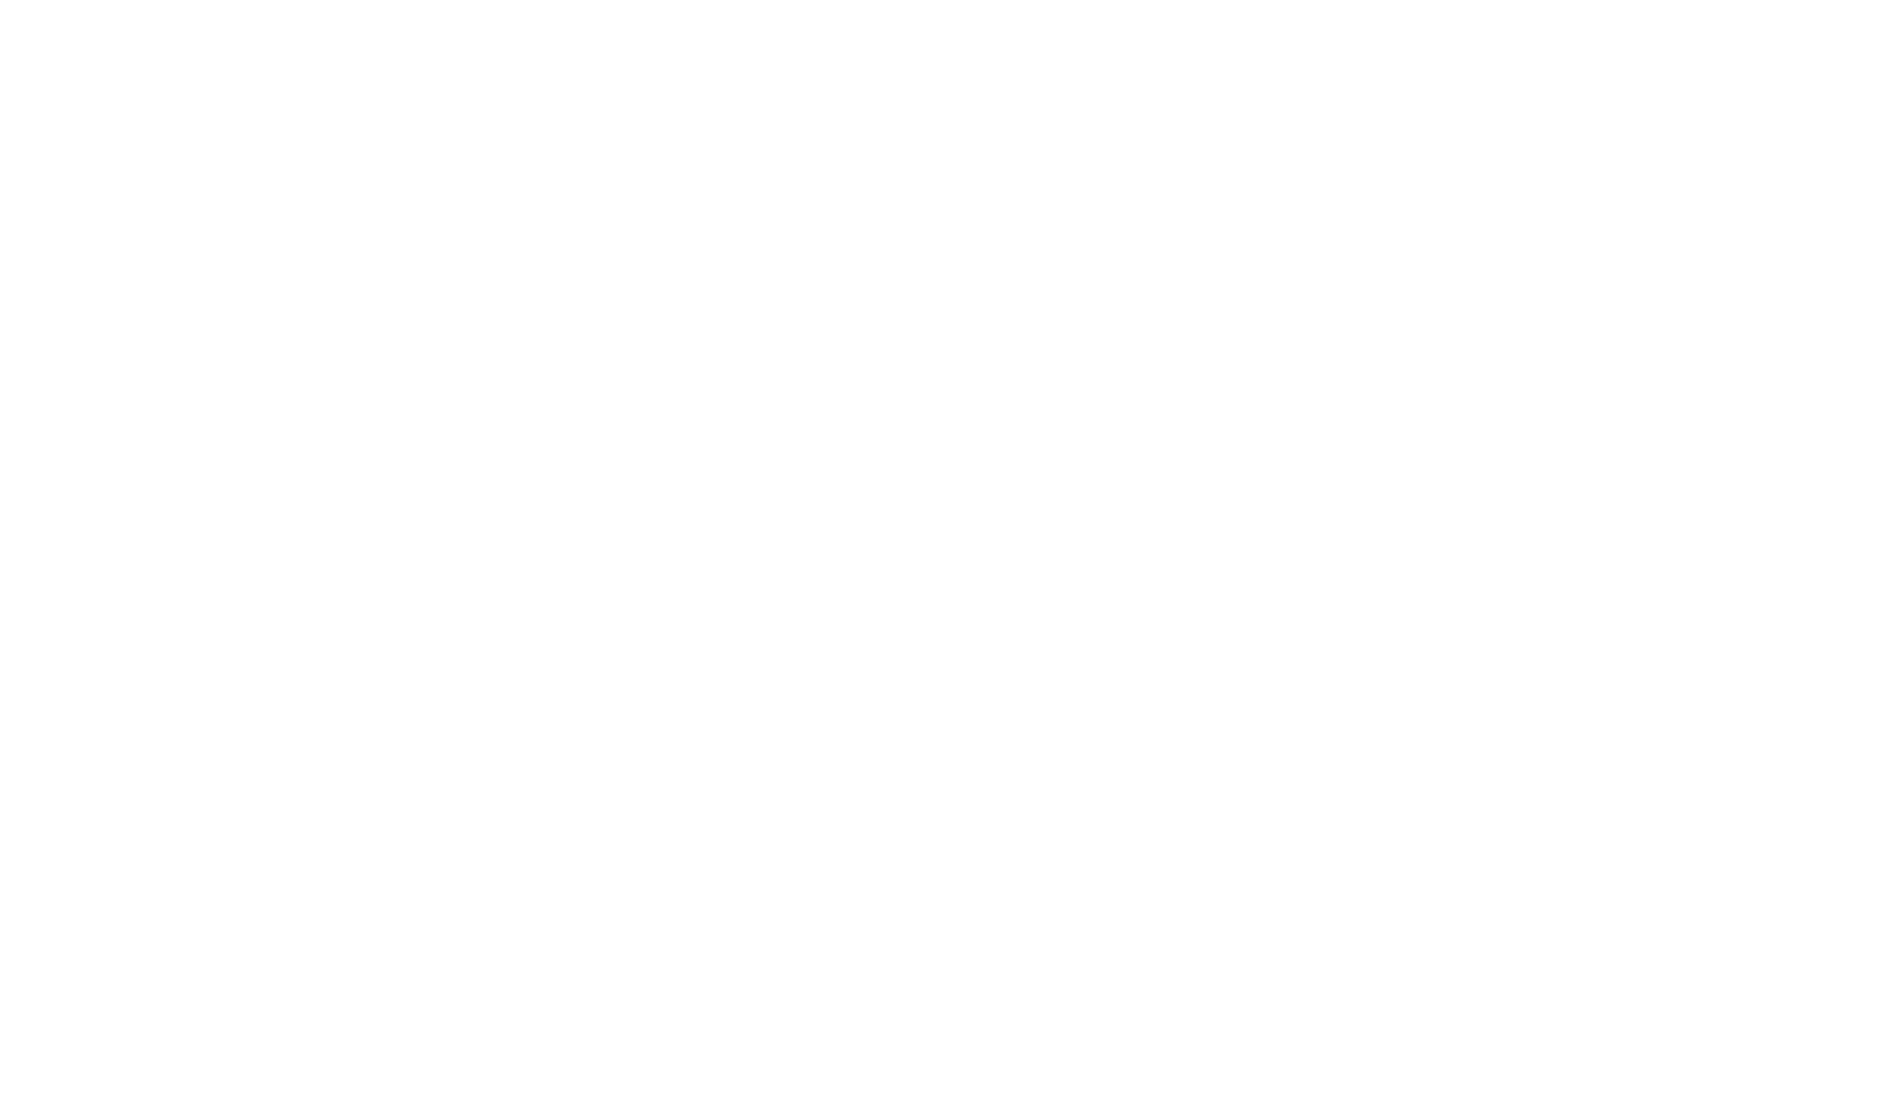 Liège_logo_white